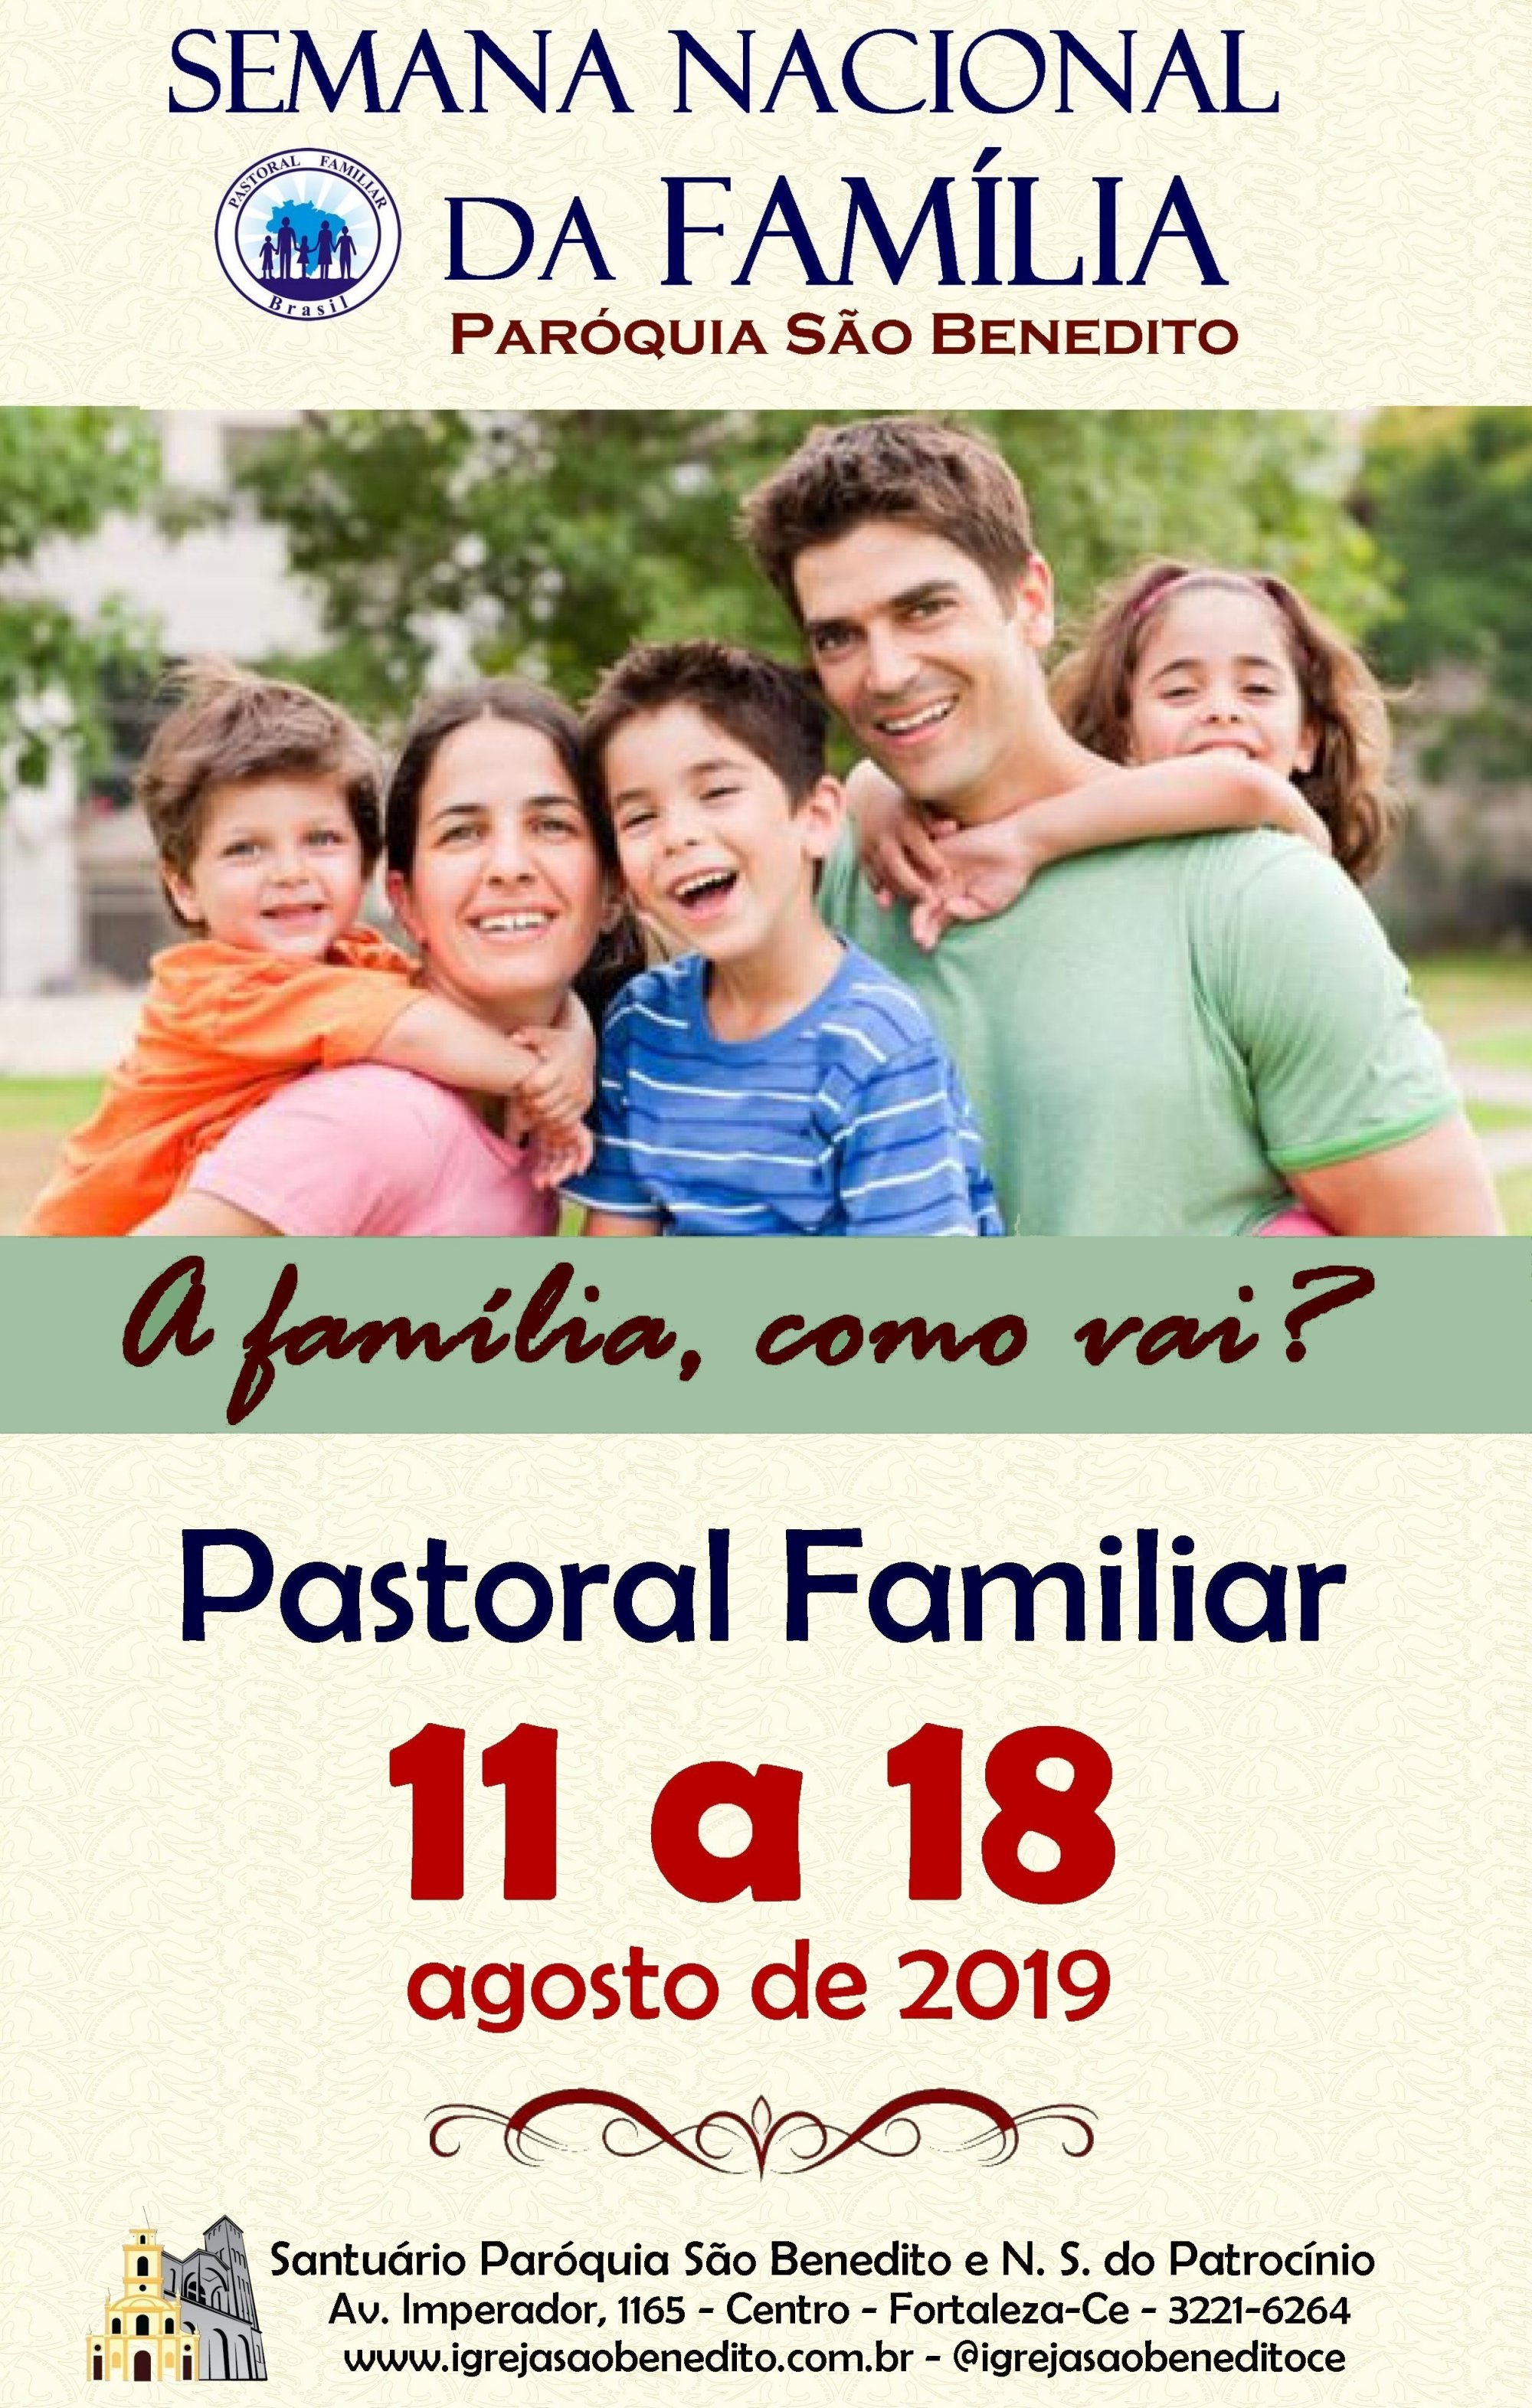 Pastoral Familiar realizará Semana Nacional da Família 2019, de 11 a 18 de Agosto